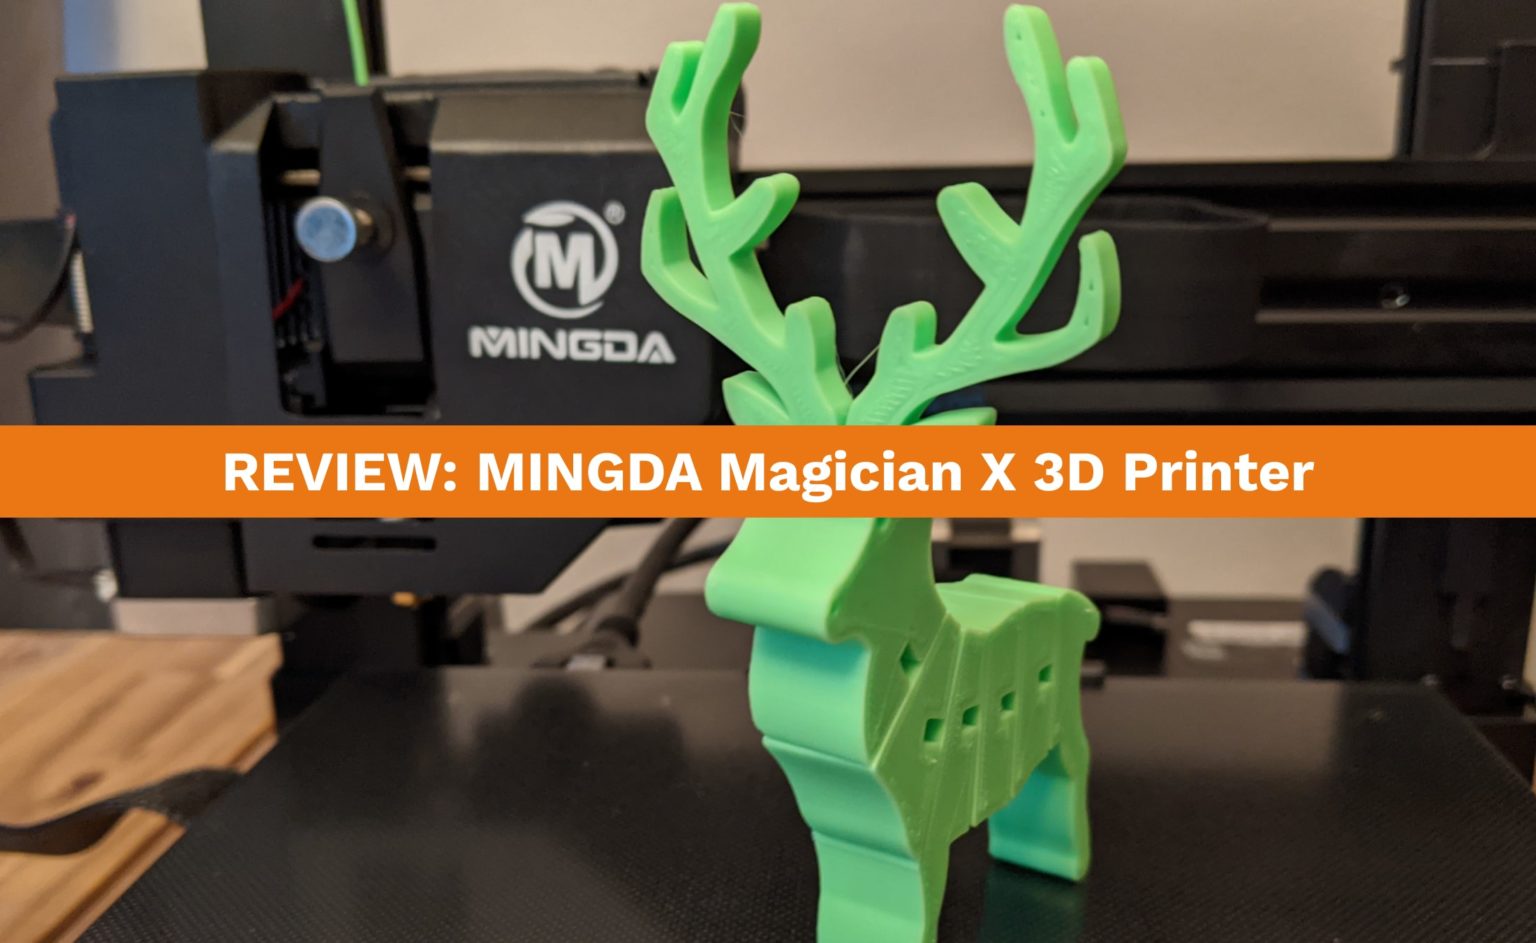 Review of the MINGDA Magician X 3D Printer